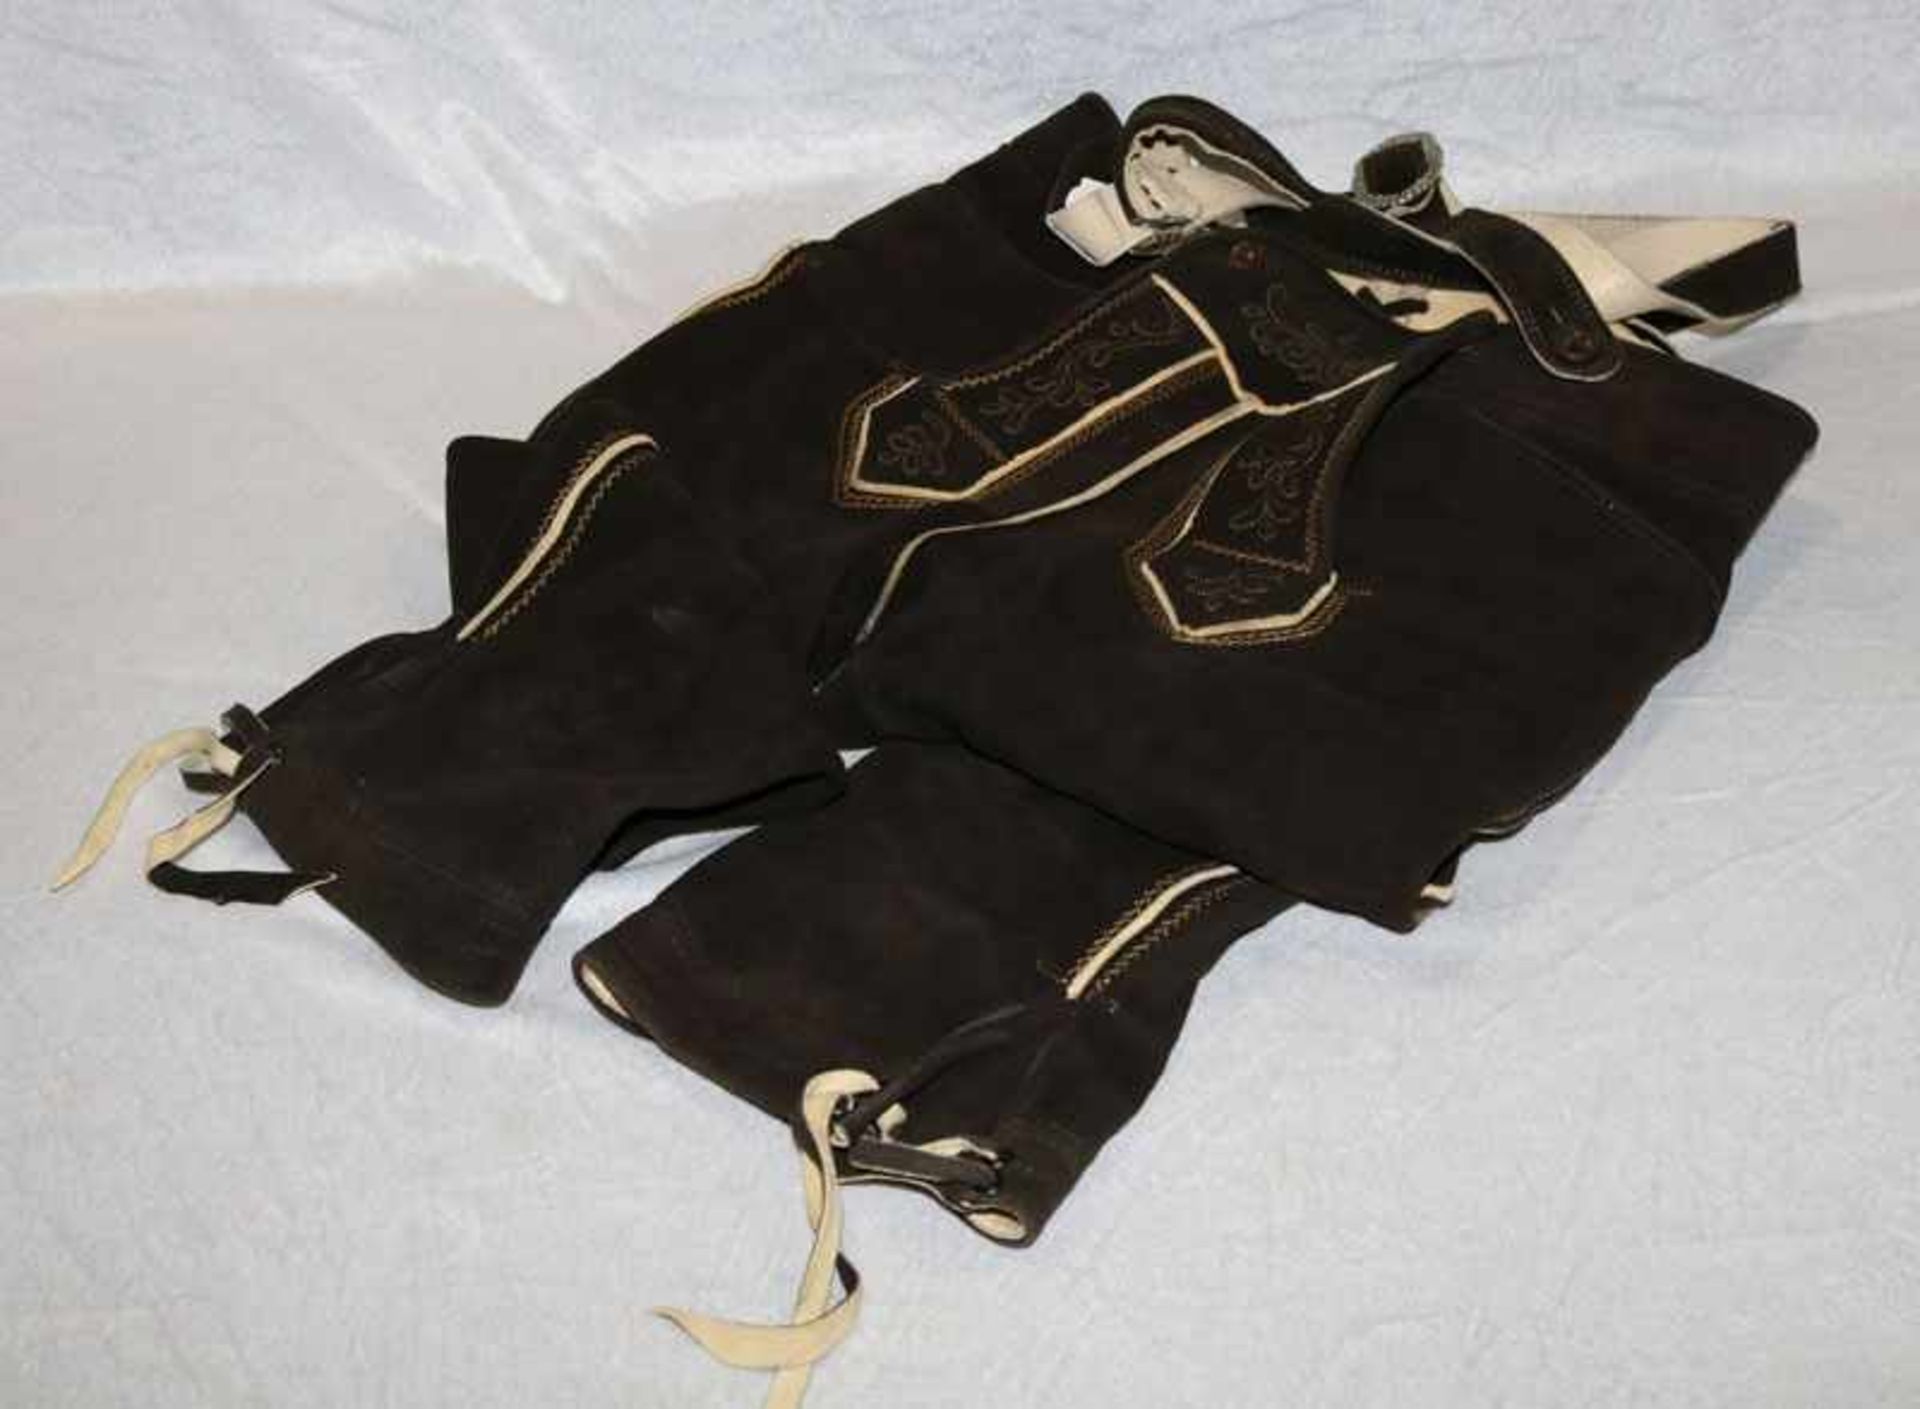 Hirschleder Kniebundhose mit Hosenträger, dunkelbraun, bestickt, ca. Gr. 52, wenig getragen,